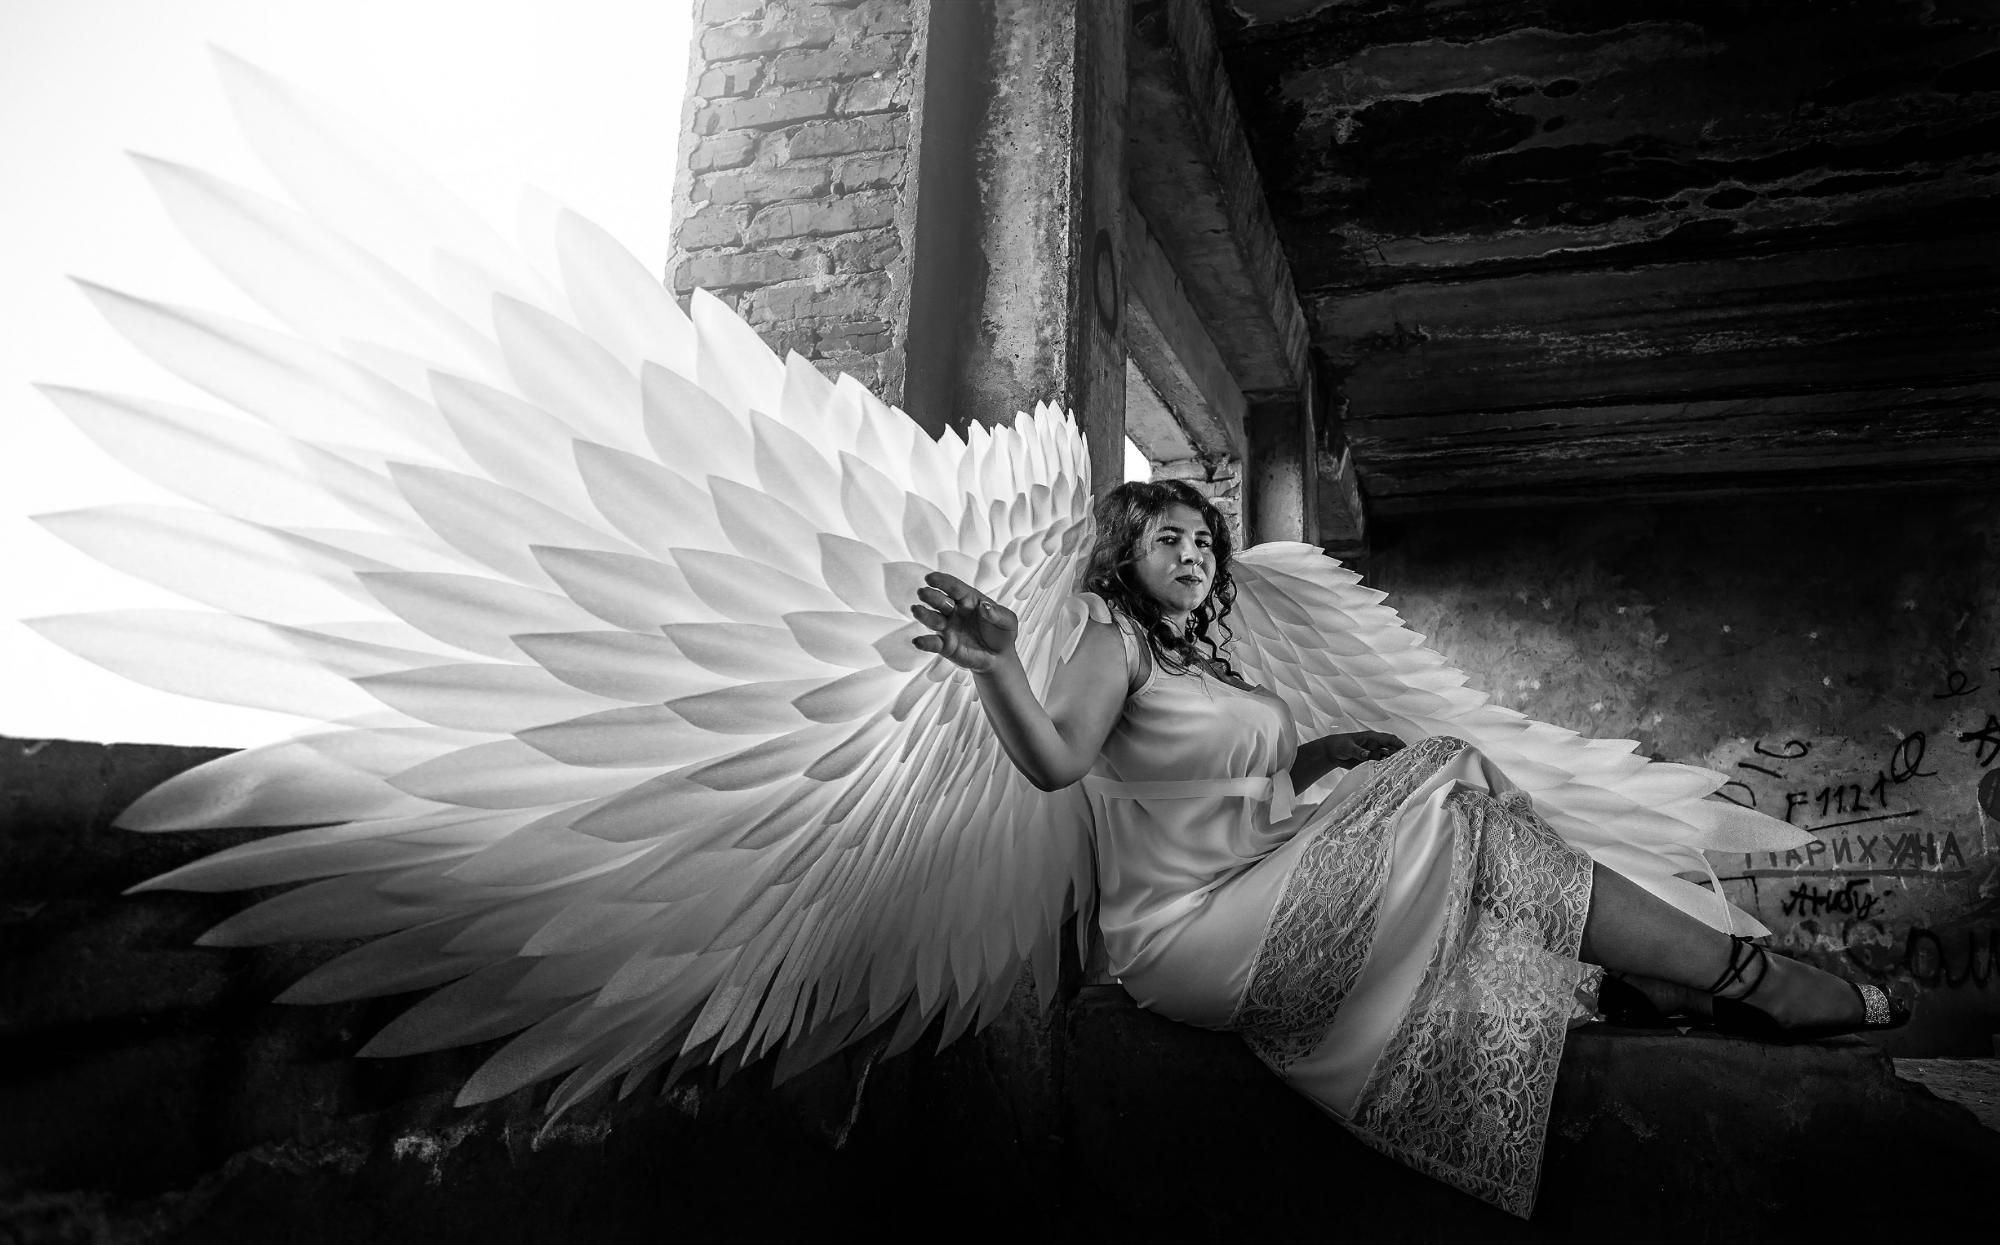 Ангел хранитель